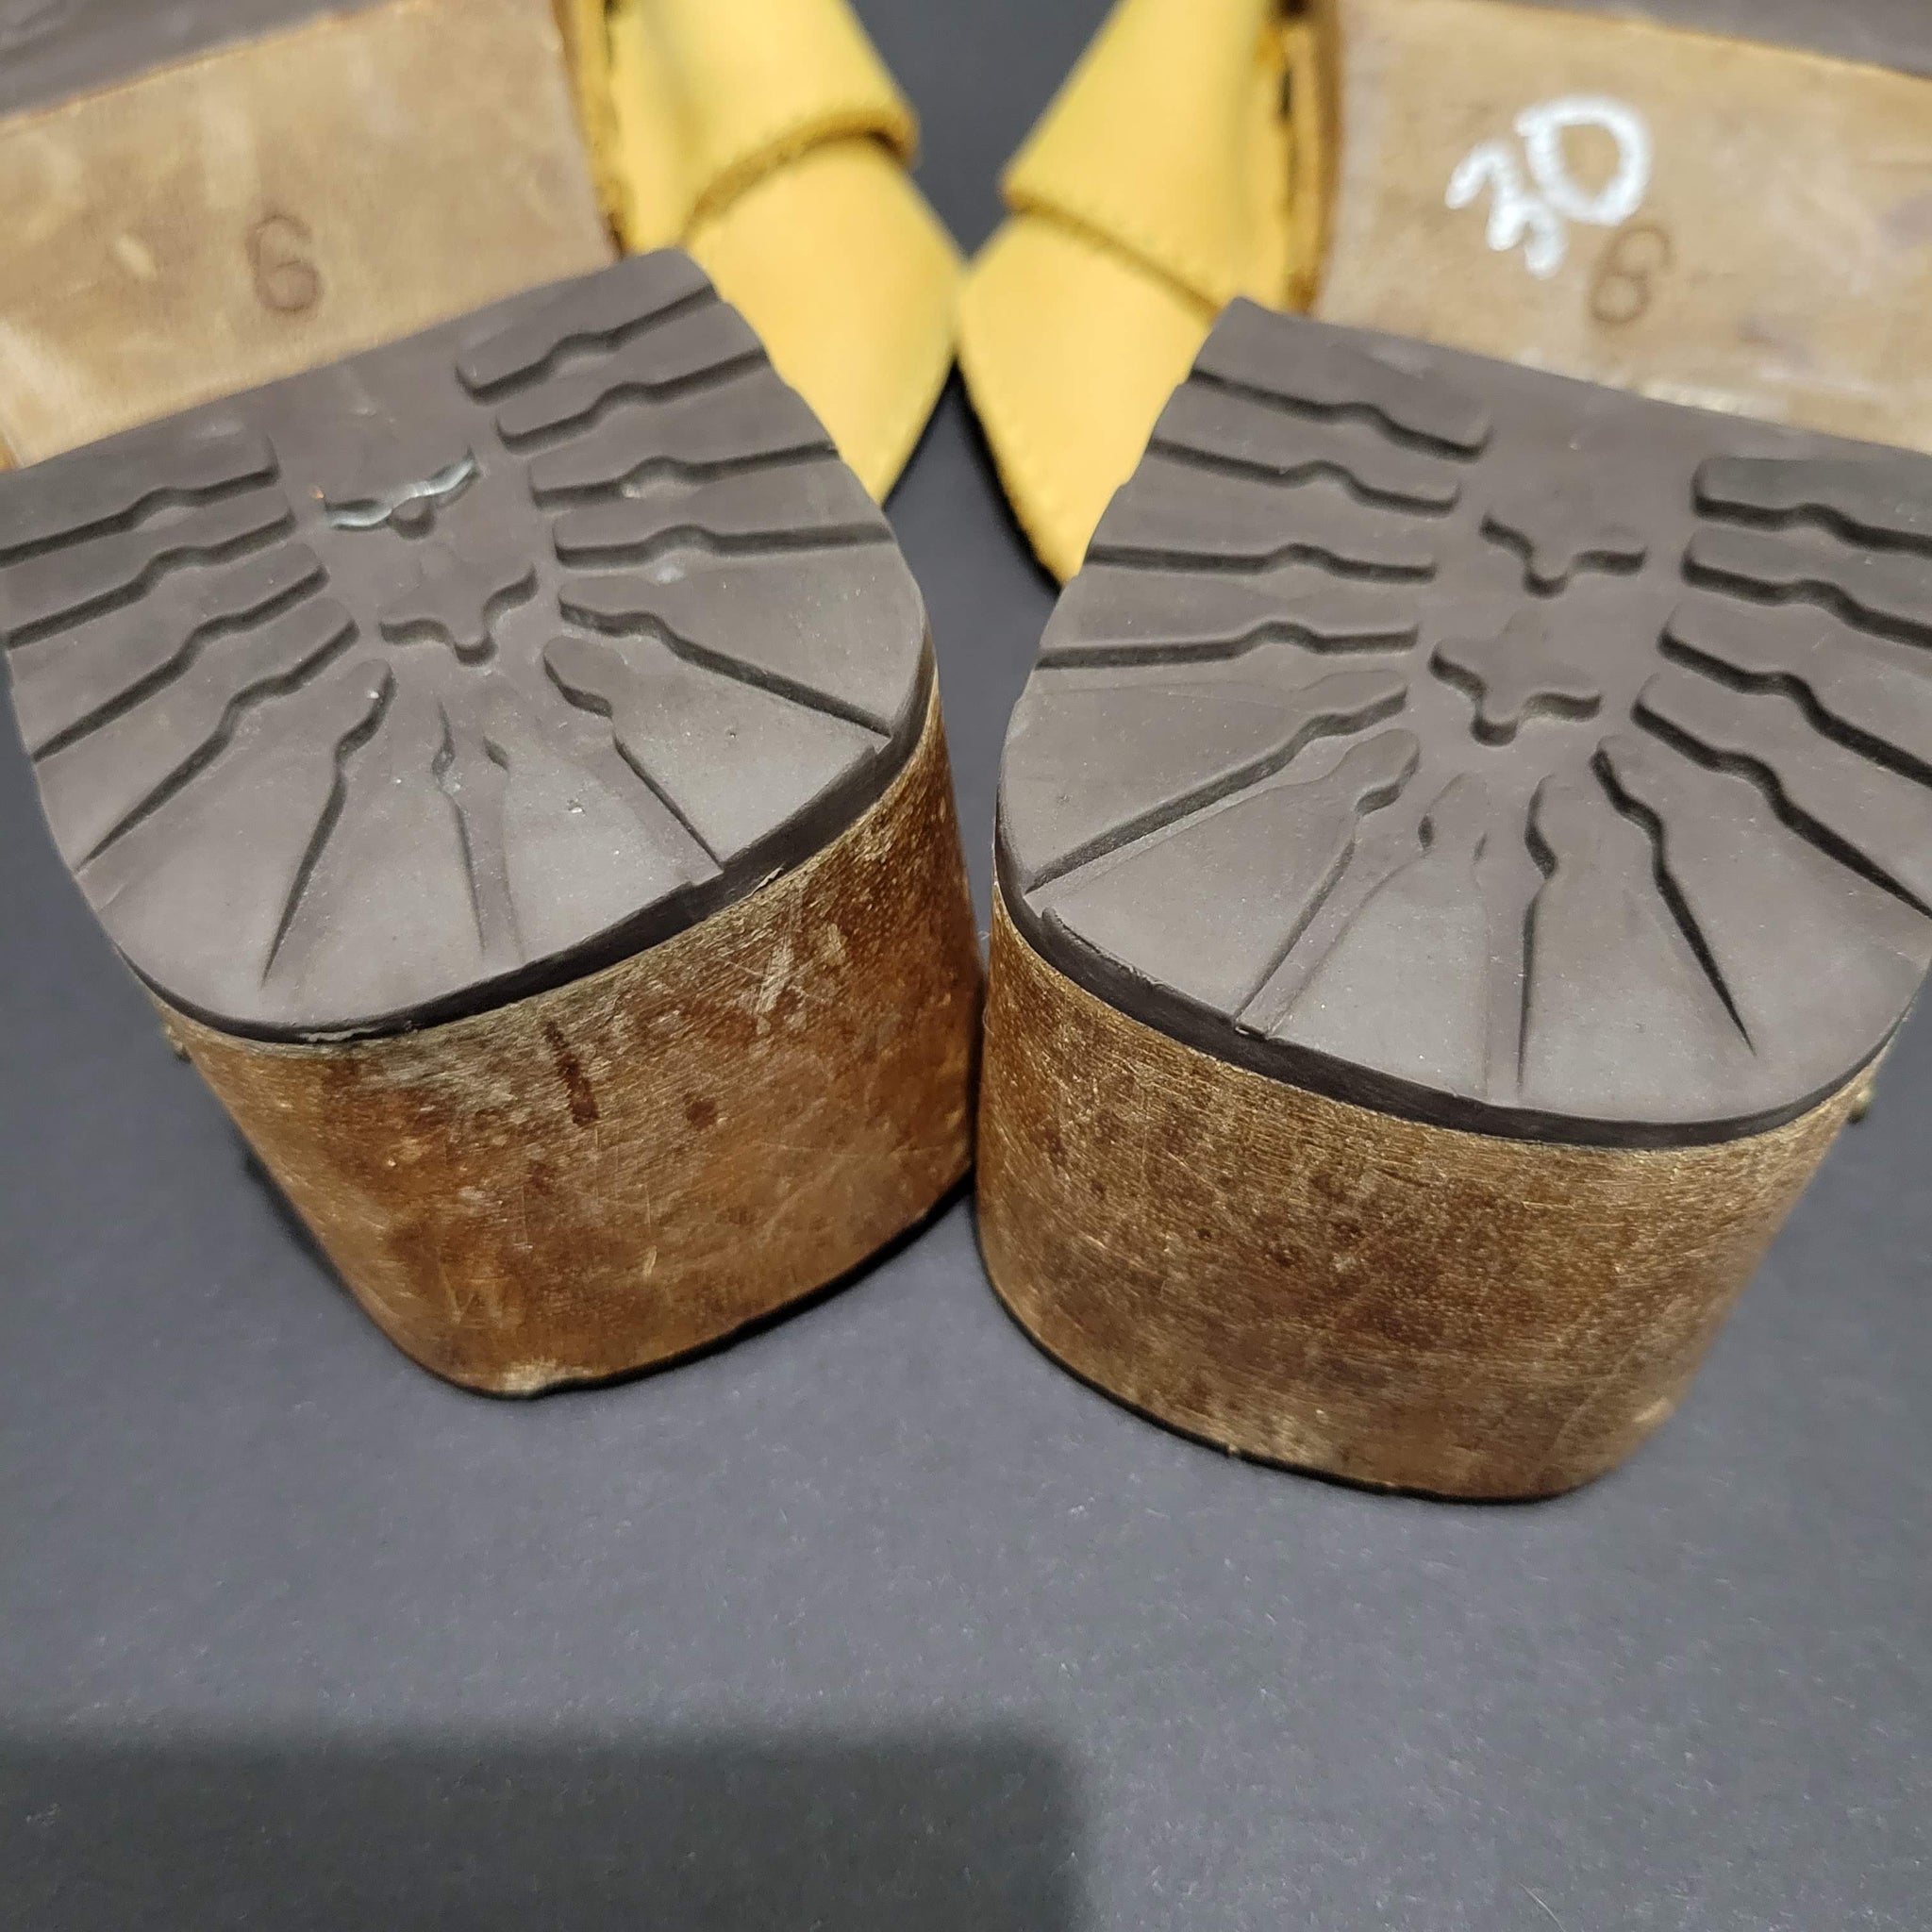 Candies Platform Sandals Clogs Size 6